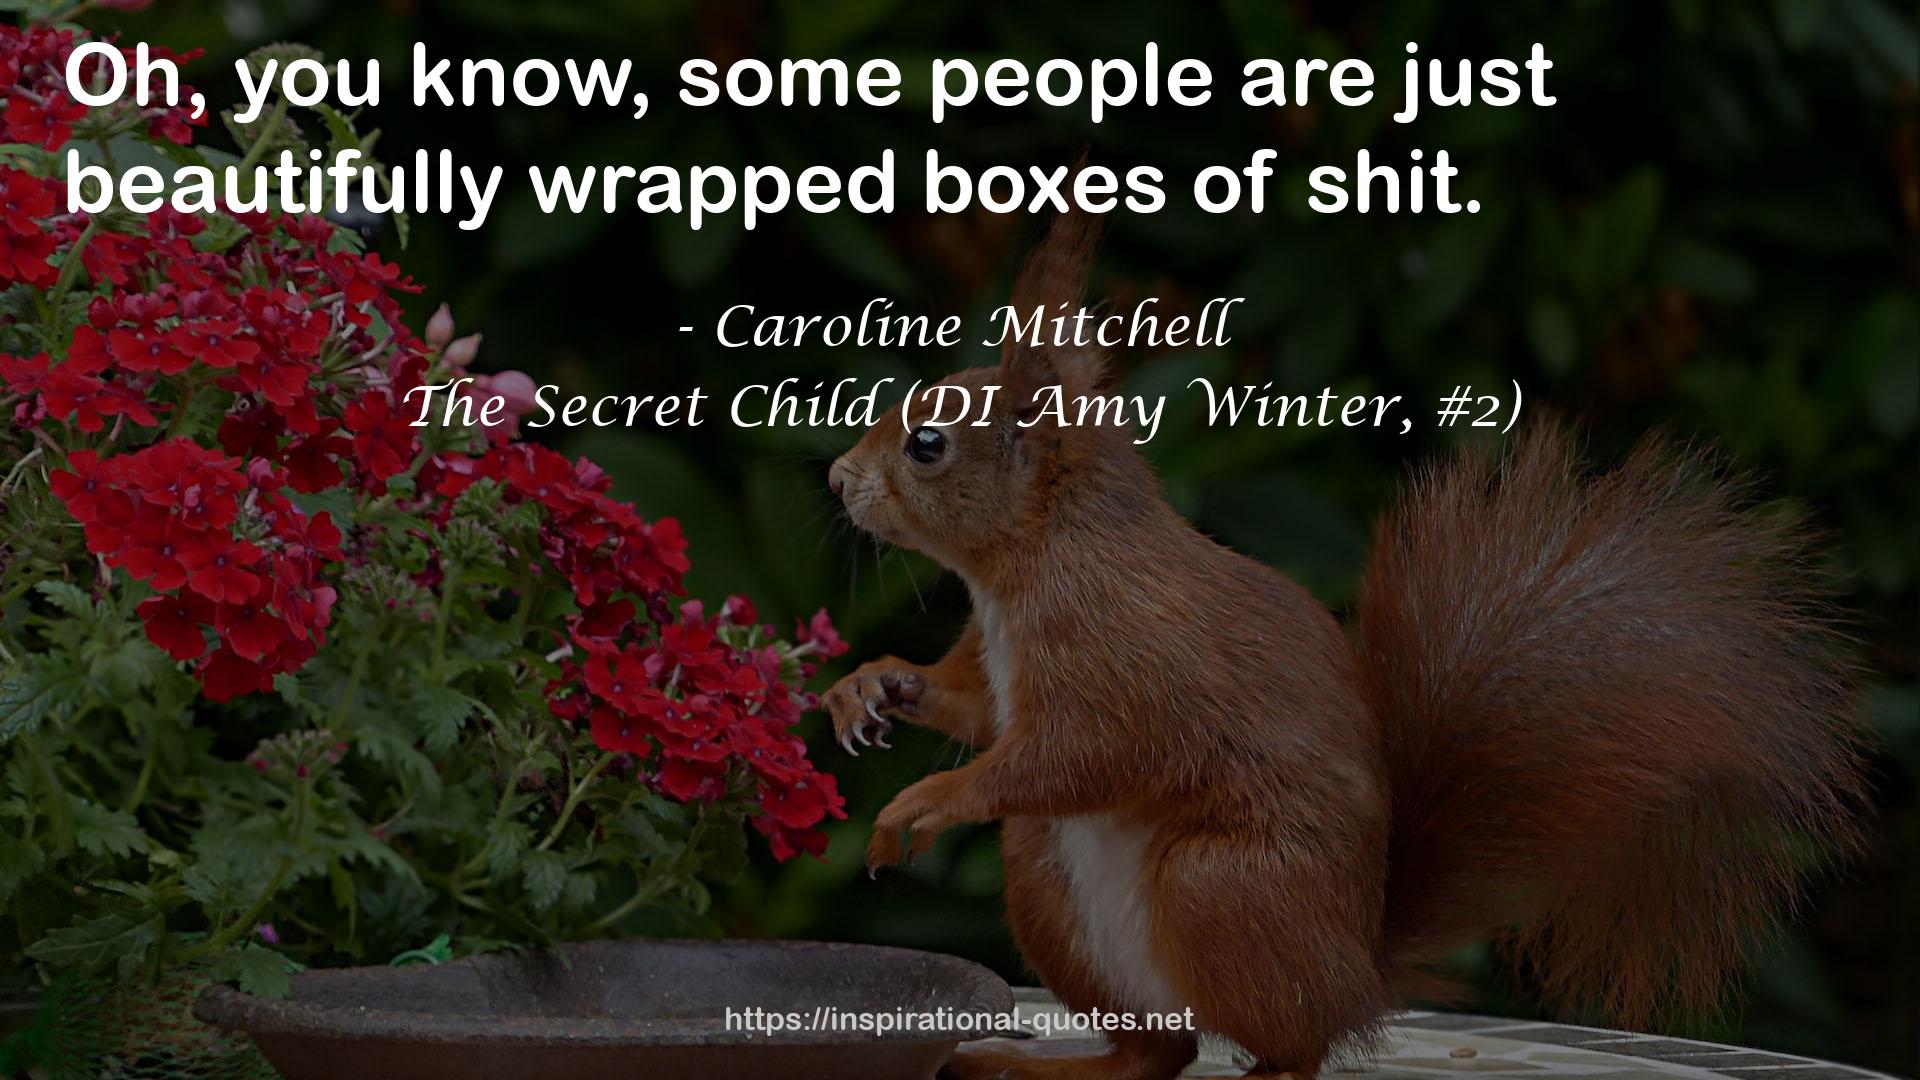 The Secret Child (DI Amy Winter, #2) QUOTES